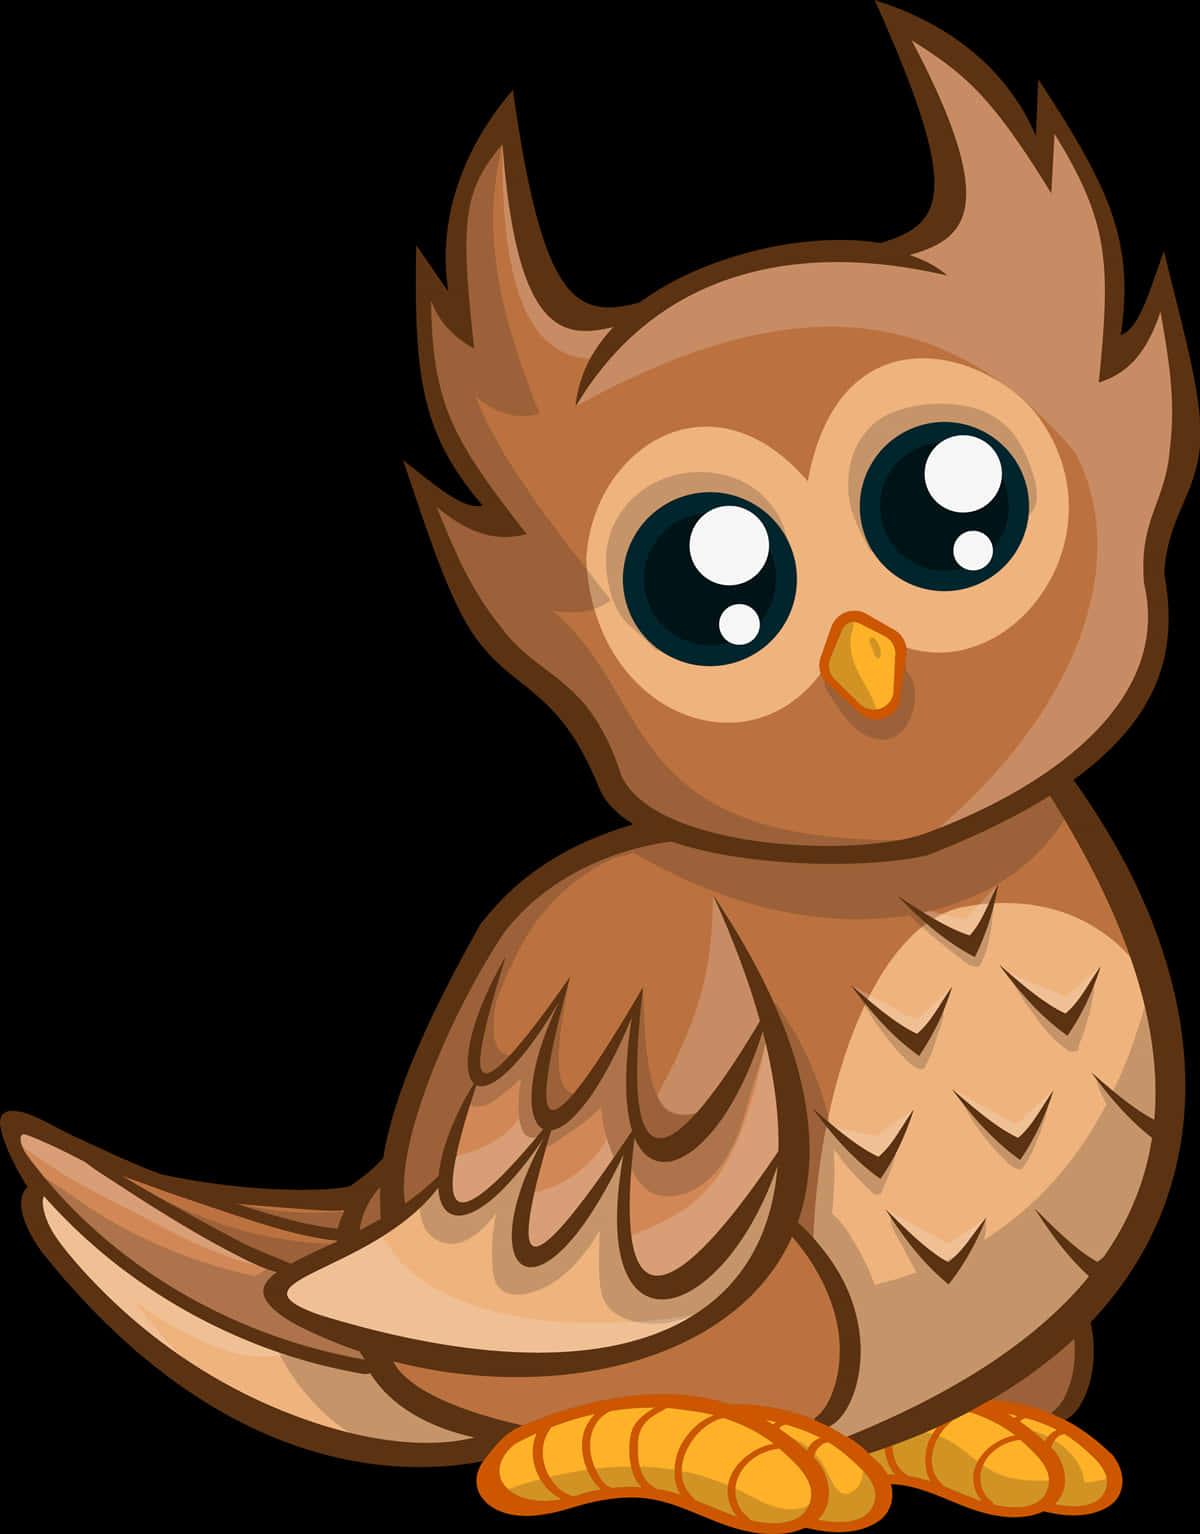 Cute Cartoon Owl PNG